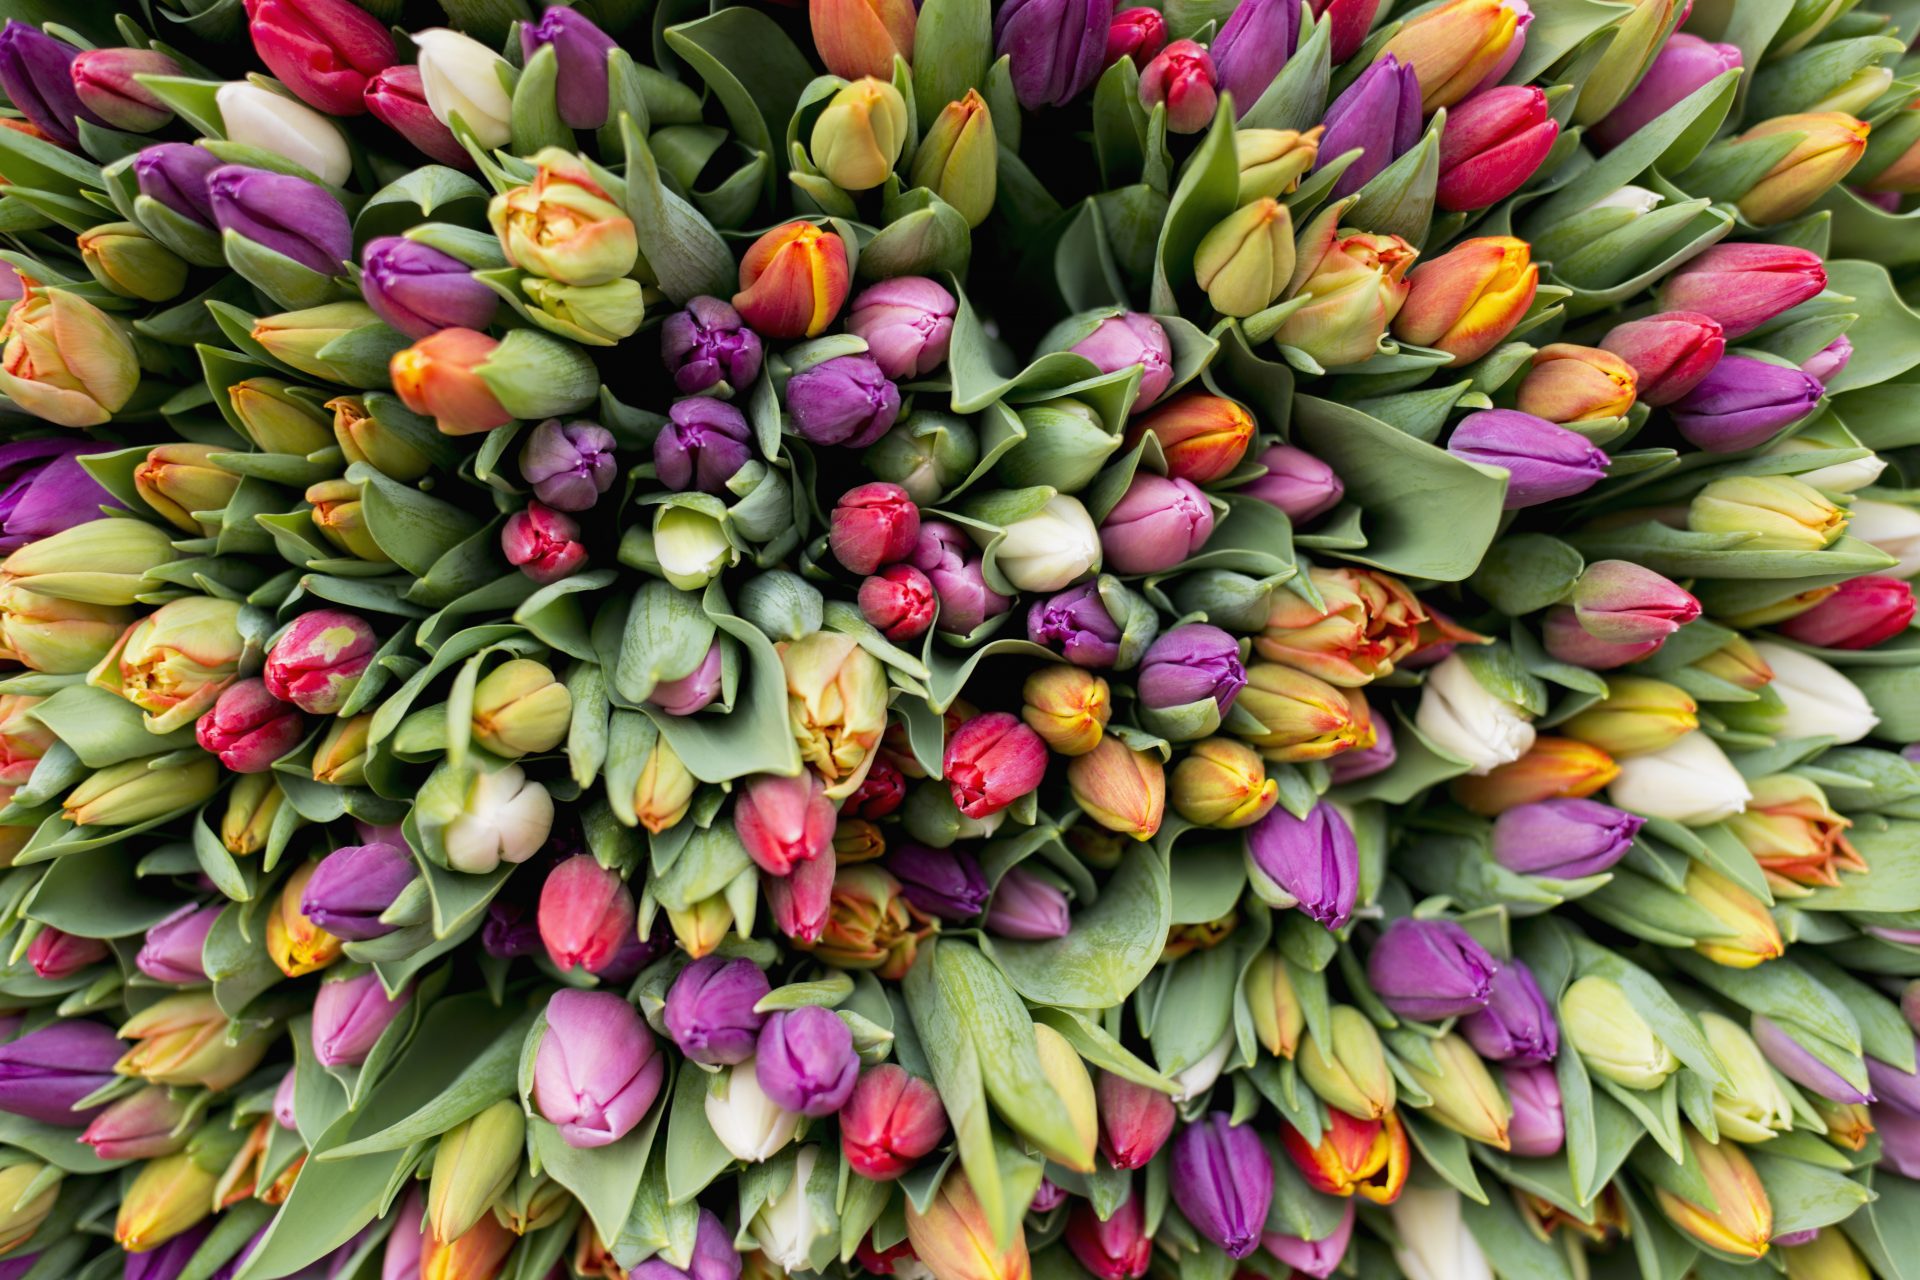 Turkey: tulips